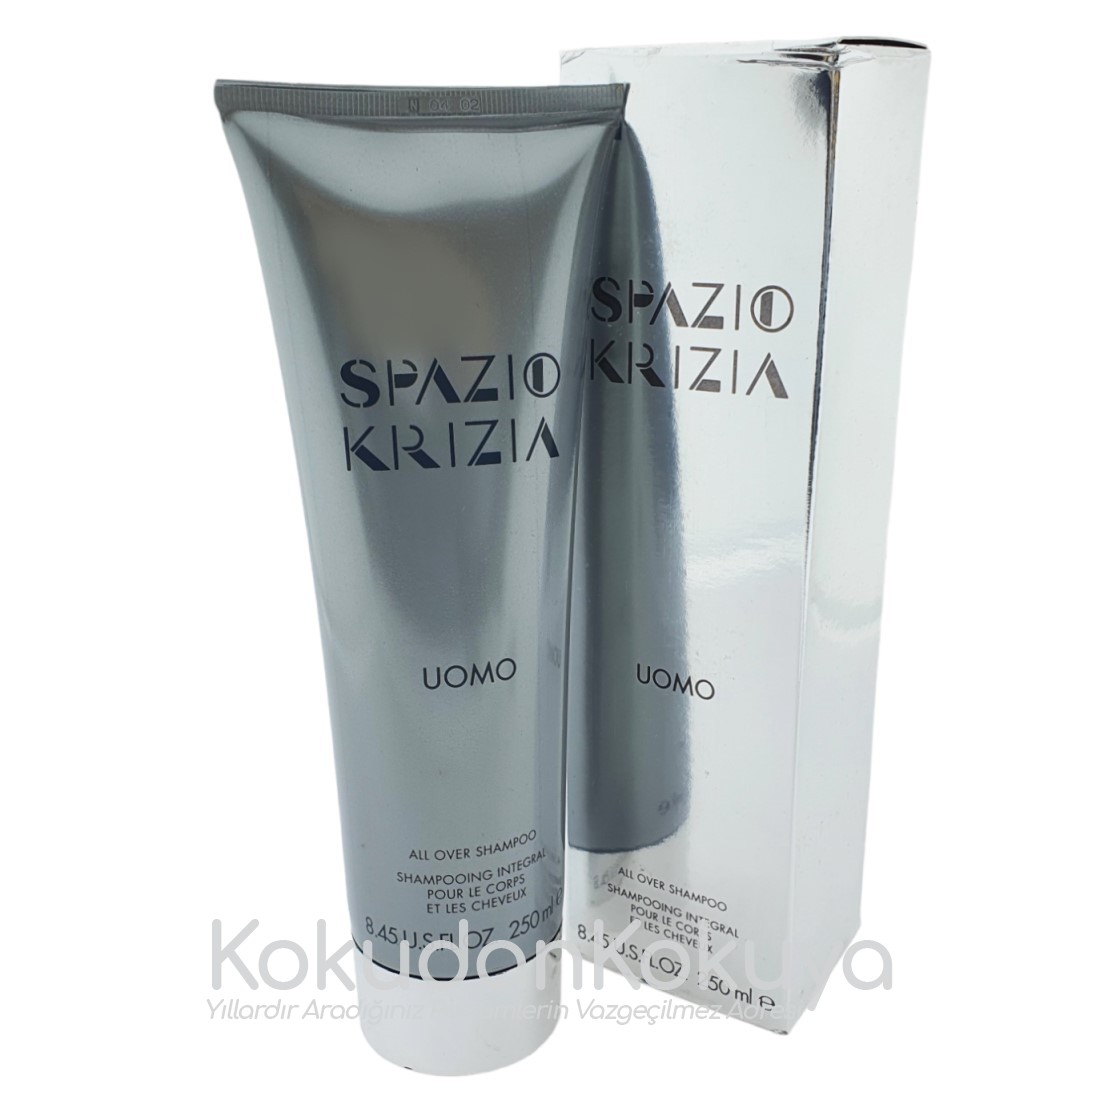 KRIZIA Spazio Krizia Uomo (Vintage) Saç Bakım Ürünleri Erkek 250ml Saç ve Vücut Şampuanı Dökme 